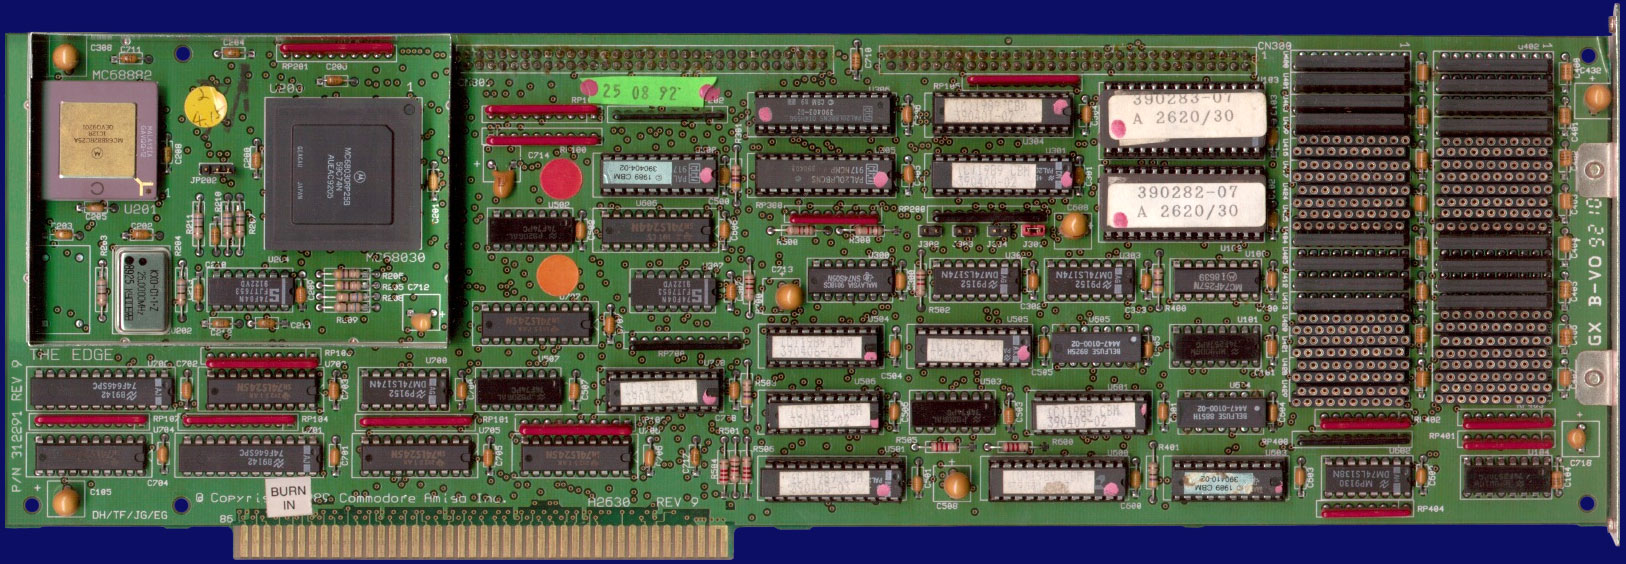 Commodore A2630 - Rev. 9, Vorderseite